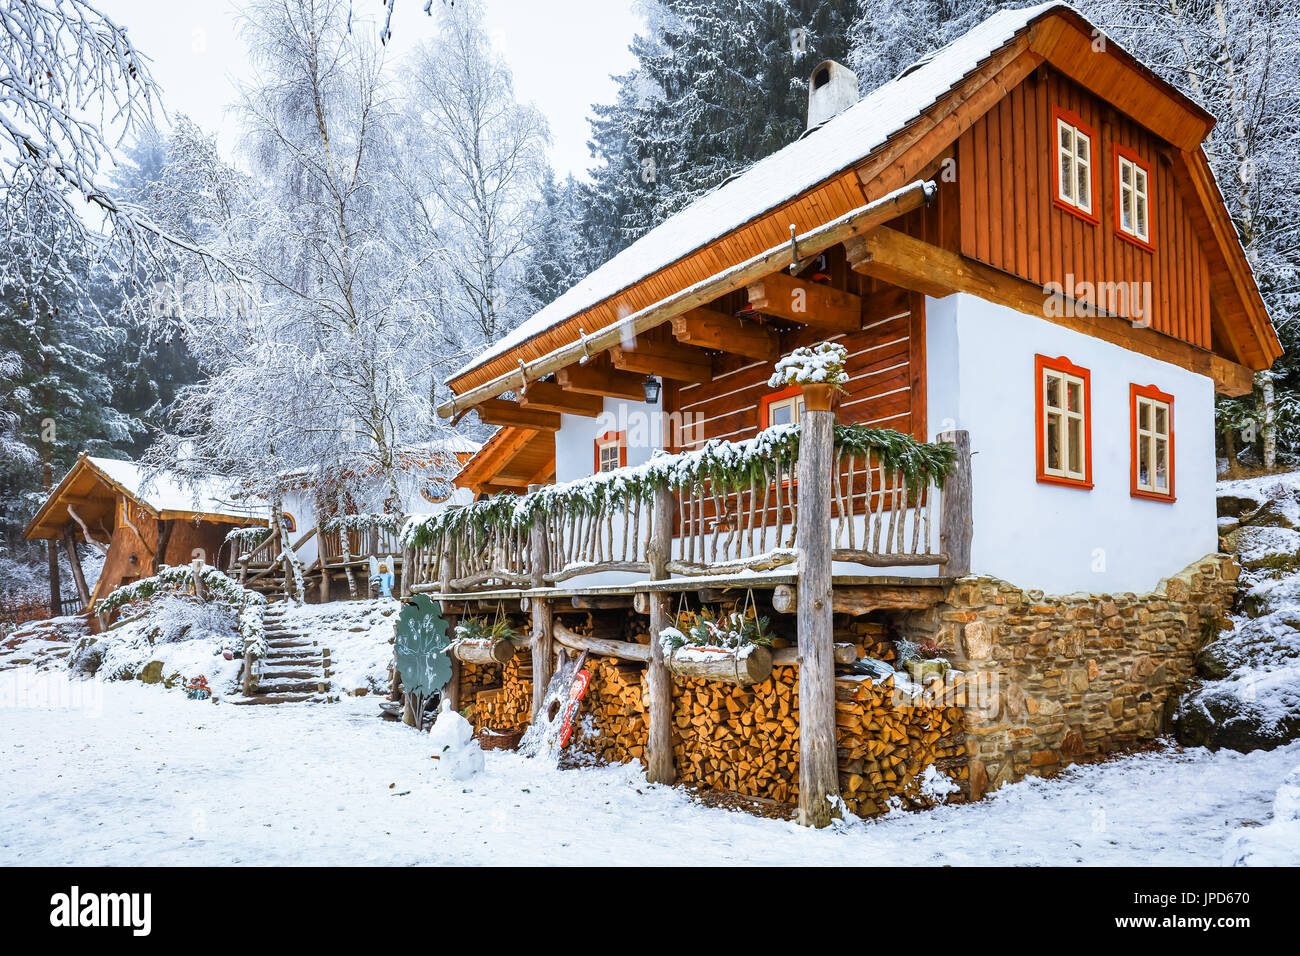 Europe, Czech Republic, Czechia, Vysočina, Podlesí, Pohádková vesnička  Podlesíčko, Fairytale village with houses inspired by different  fairytales,snow Stock Photo - Alamy